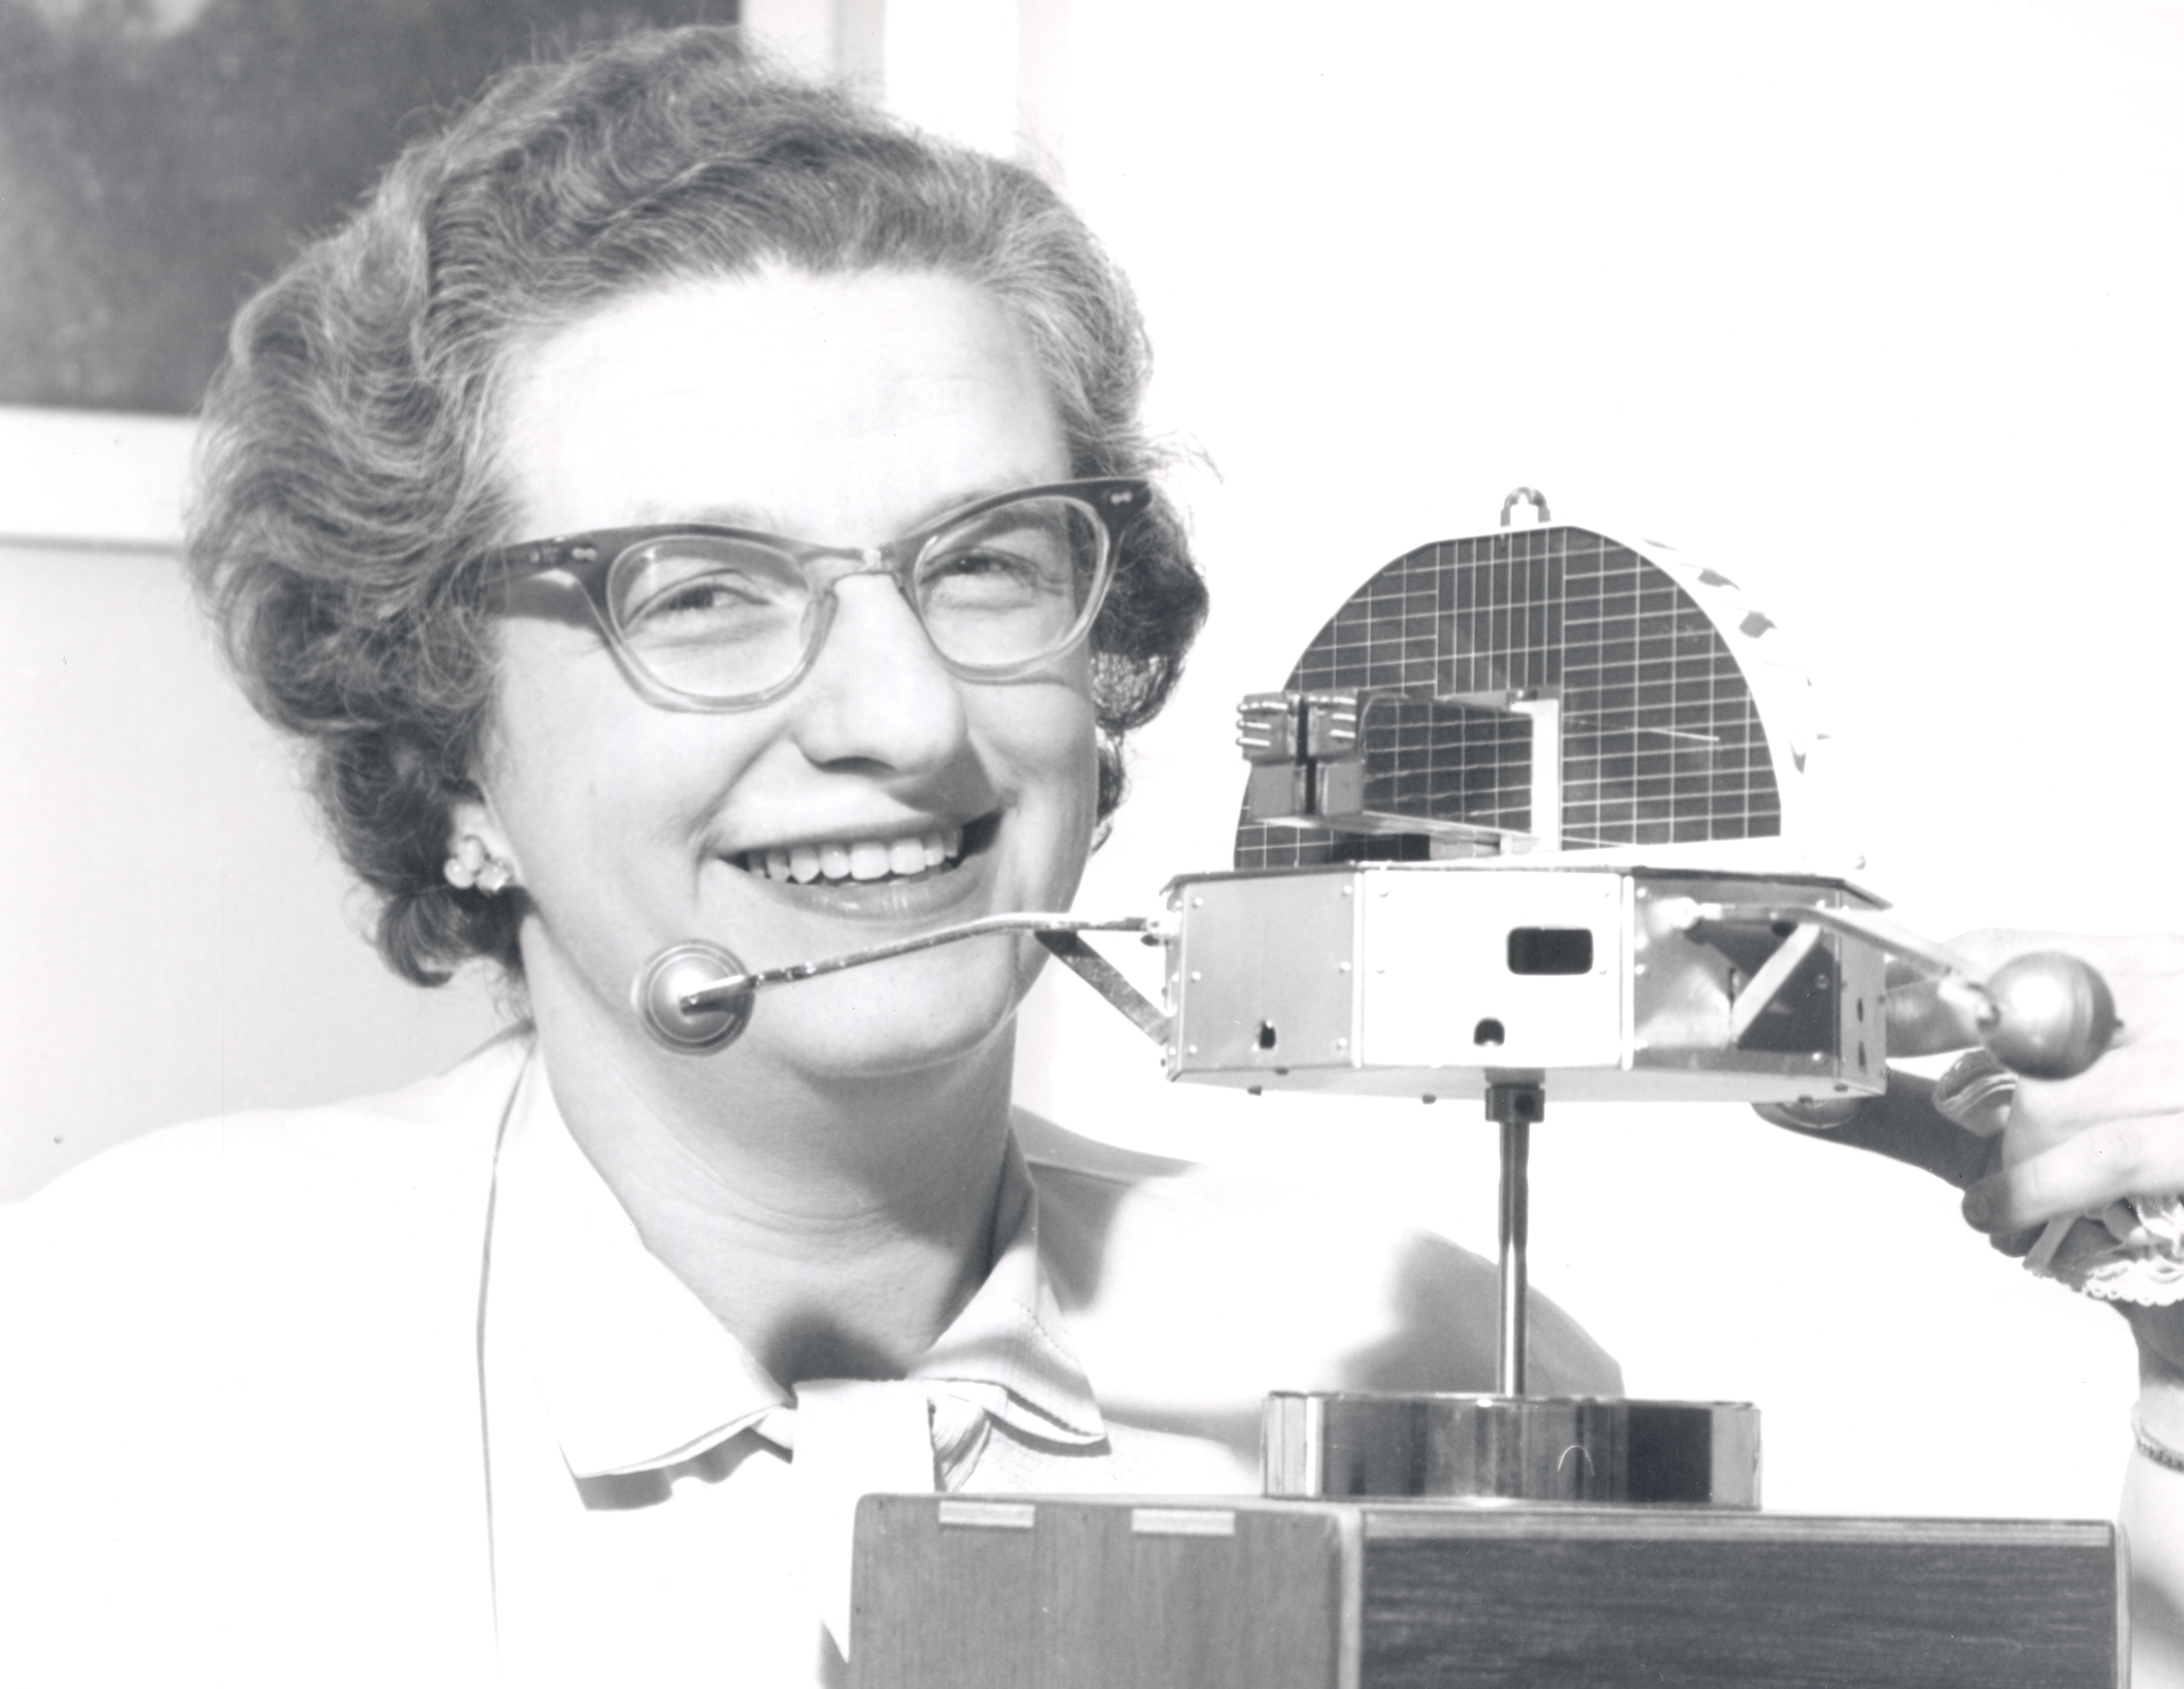 auteur Nancy Roman de la citation Les résultats passionnants de la Hubble, d'autres satellites et sondes n'auraient pas été possibles sans solutions innovantes à de nombreux problèmes techniques.